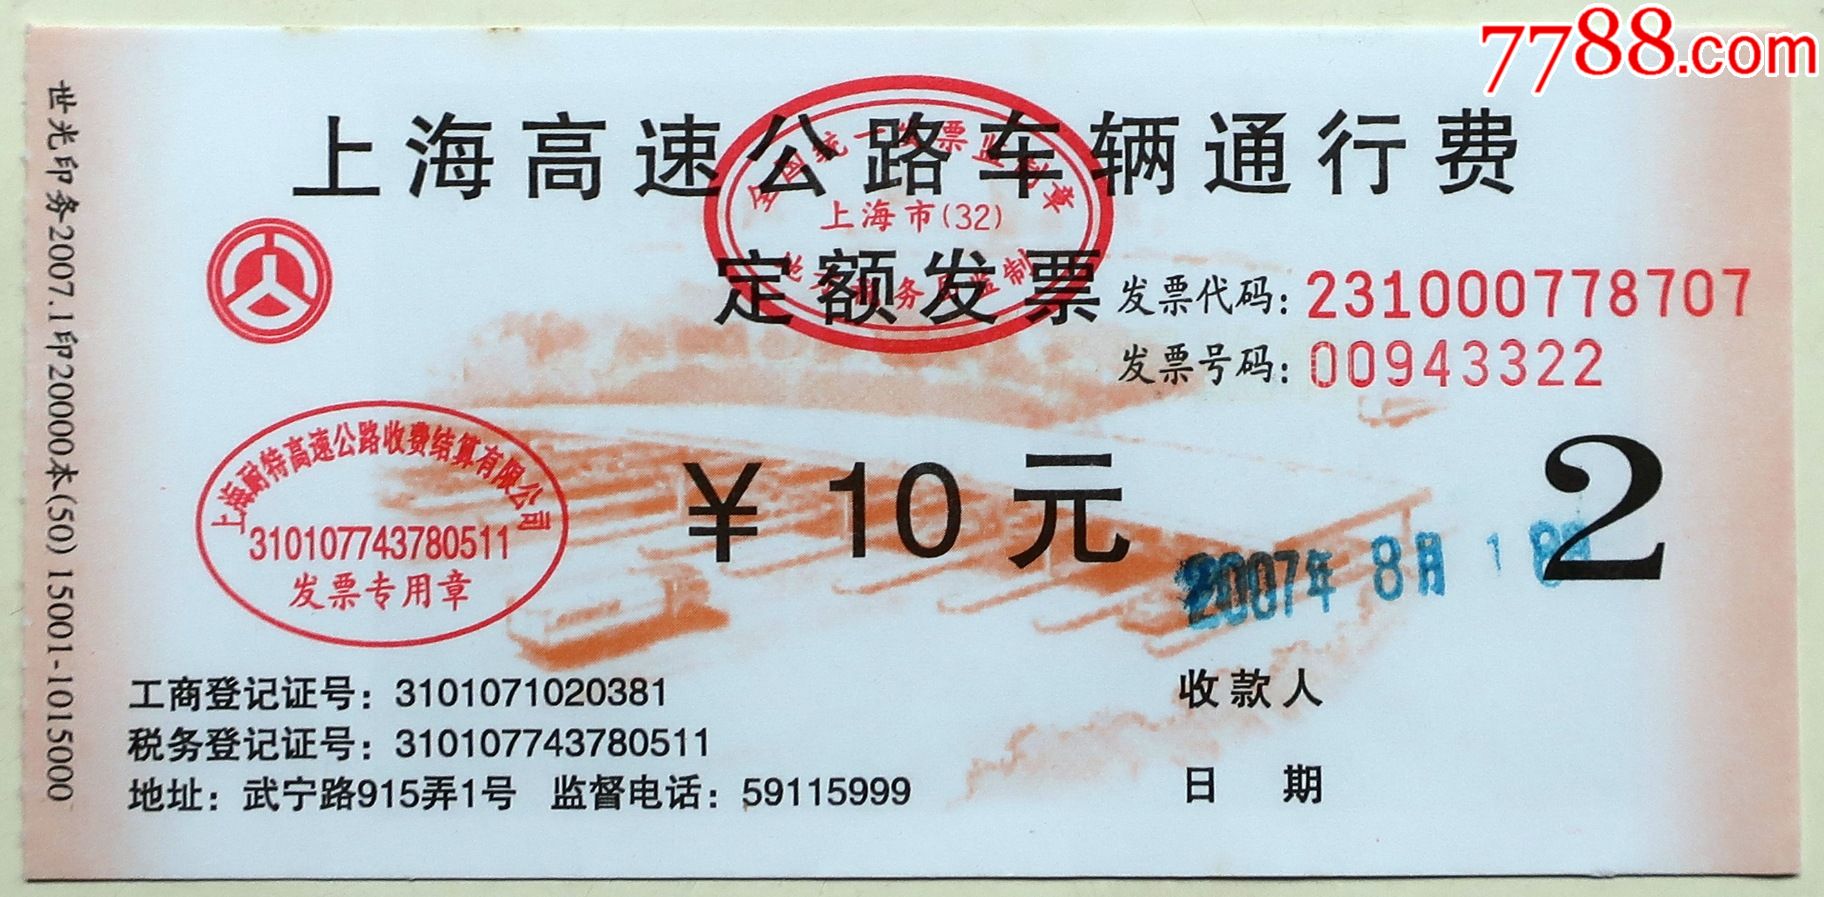 2007年上海高速公路车辆通行费10元